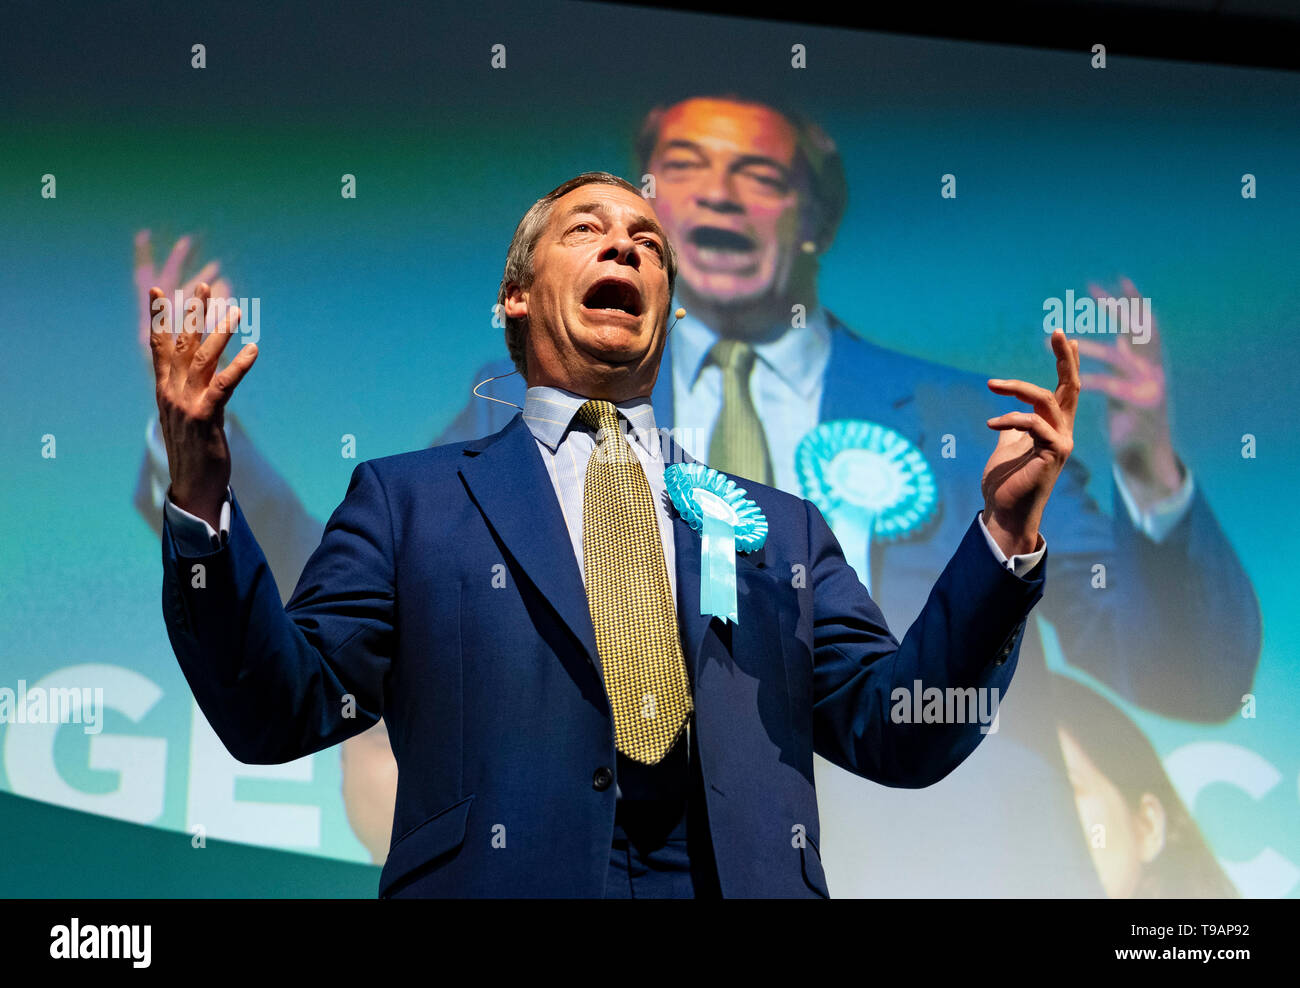 Edinburgh, Schottland, Großbritannien. 17 Mai, 2019. Nigel Farage in Edinburgh für eine Rallye mit europäischen Kandidaten des Brexit Partei. Gehalten an der Corn Exchange in der Stadt. Credit: Iain Masterton/Alamy leben Nachrichten Stockfoto